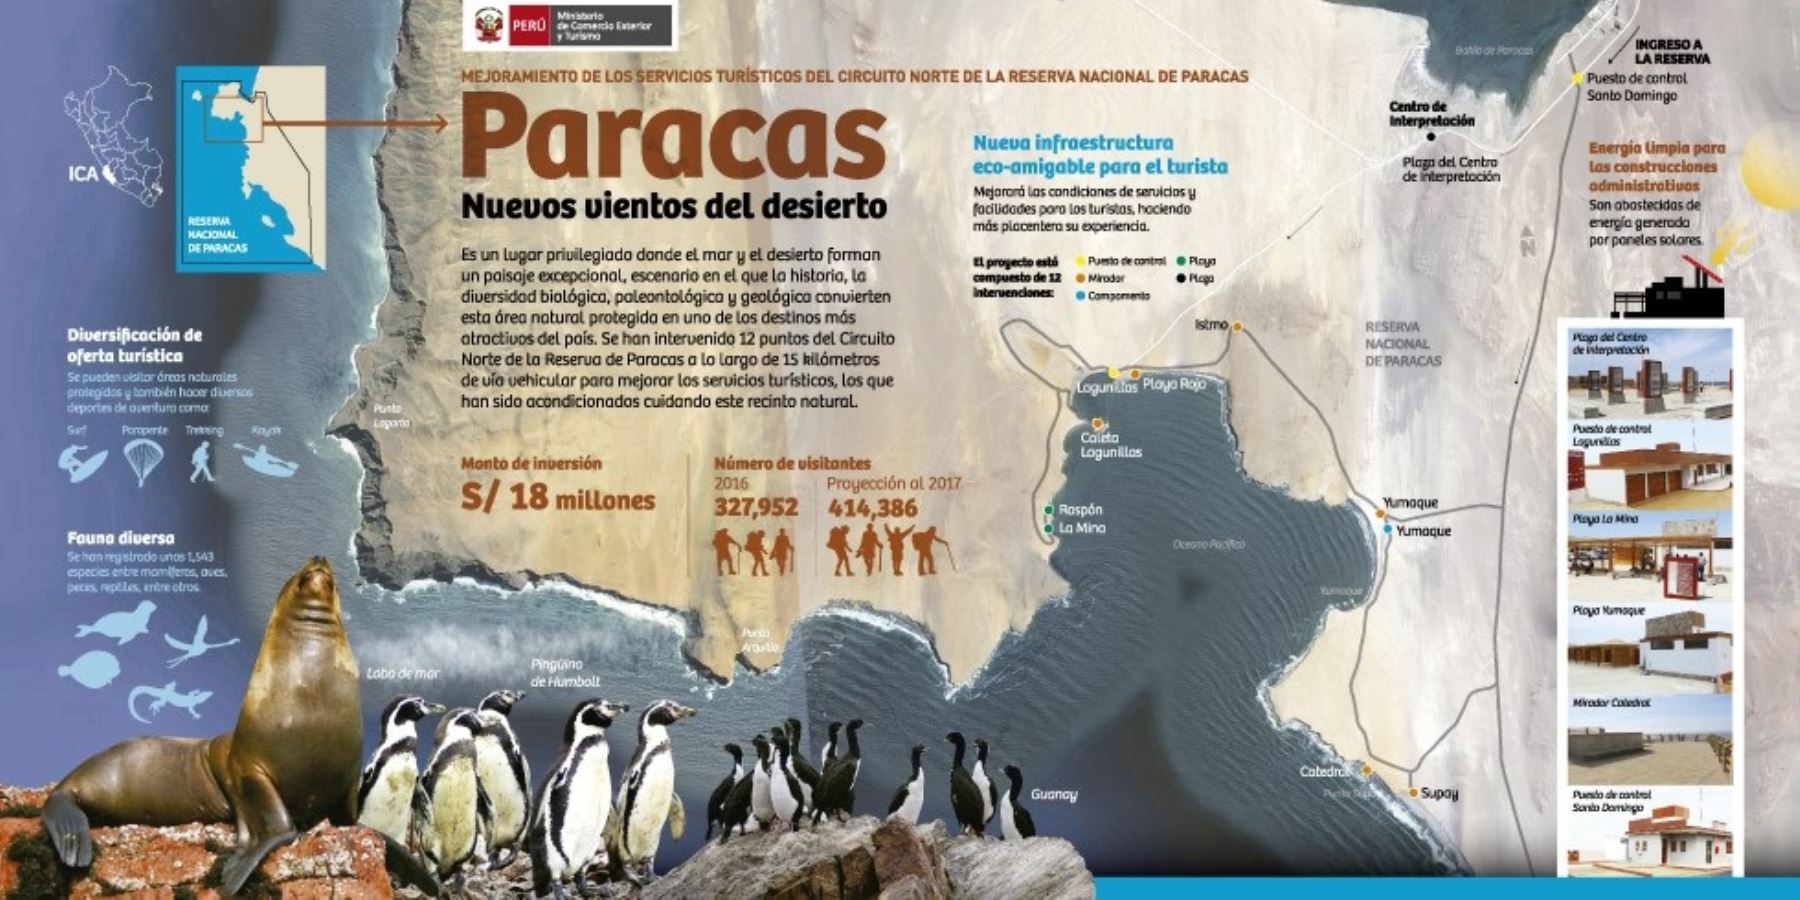 Detalles del nuevo circuito norte de la Reserva Nacional de Paracas